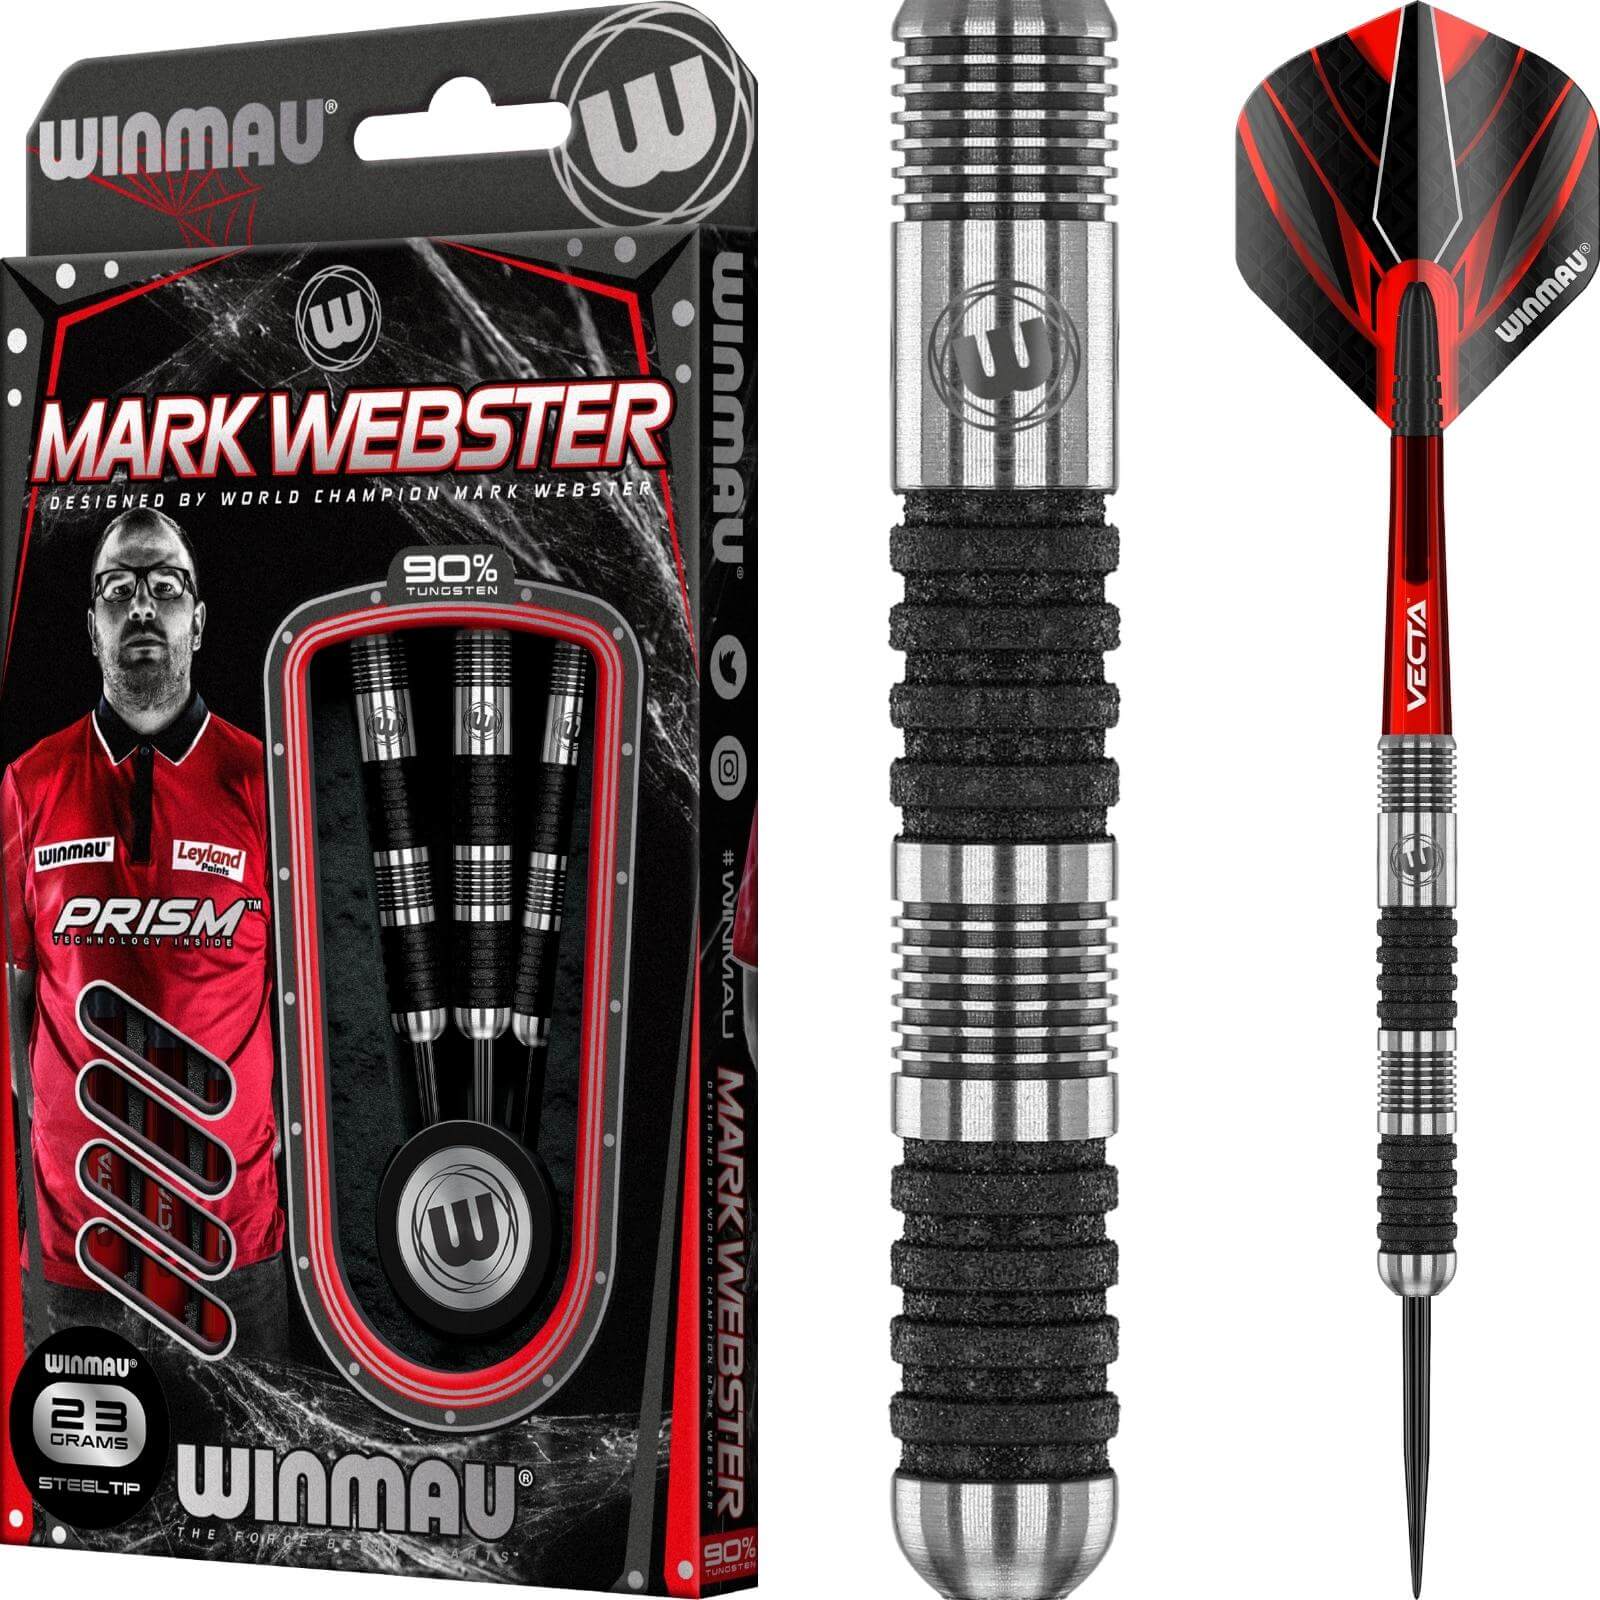 Darts - Winmau - Mark Webster SE Darts - Steel Tip - 90% Tungsten - 23g 25g 